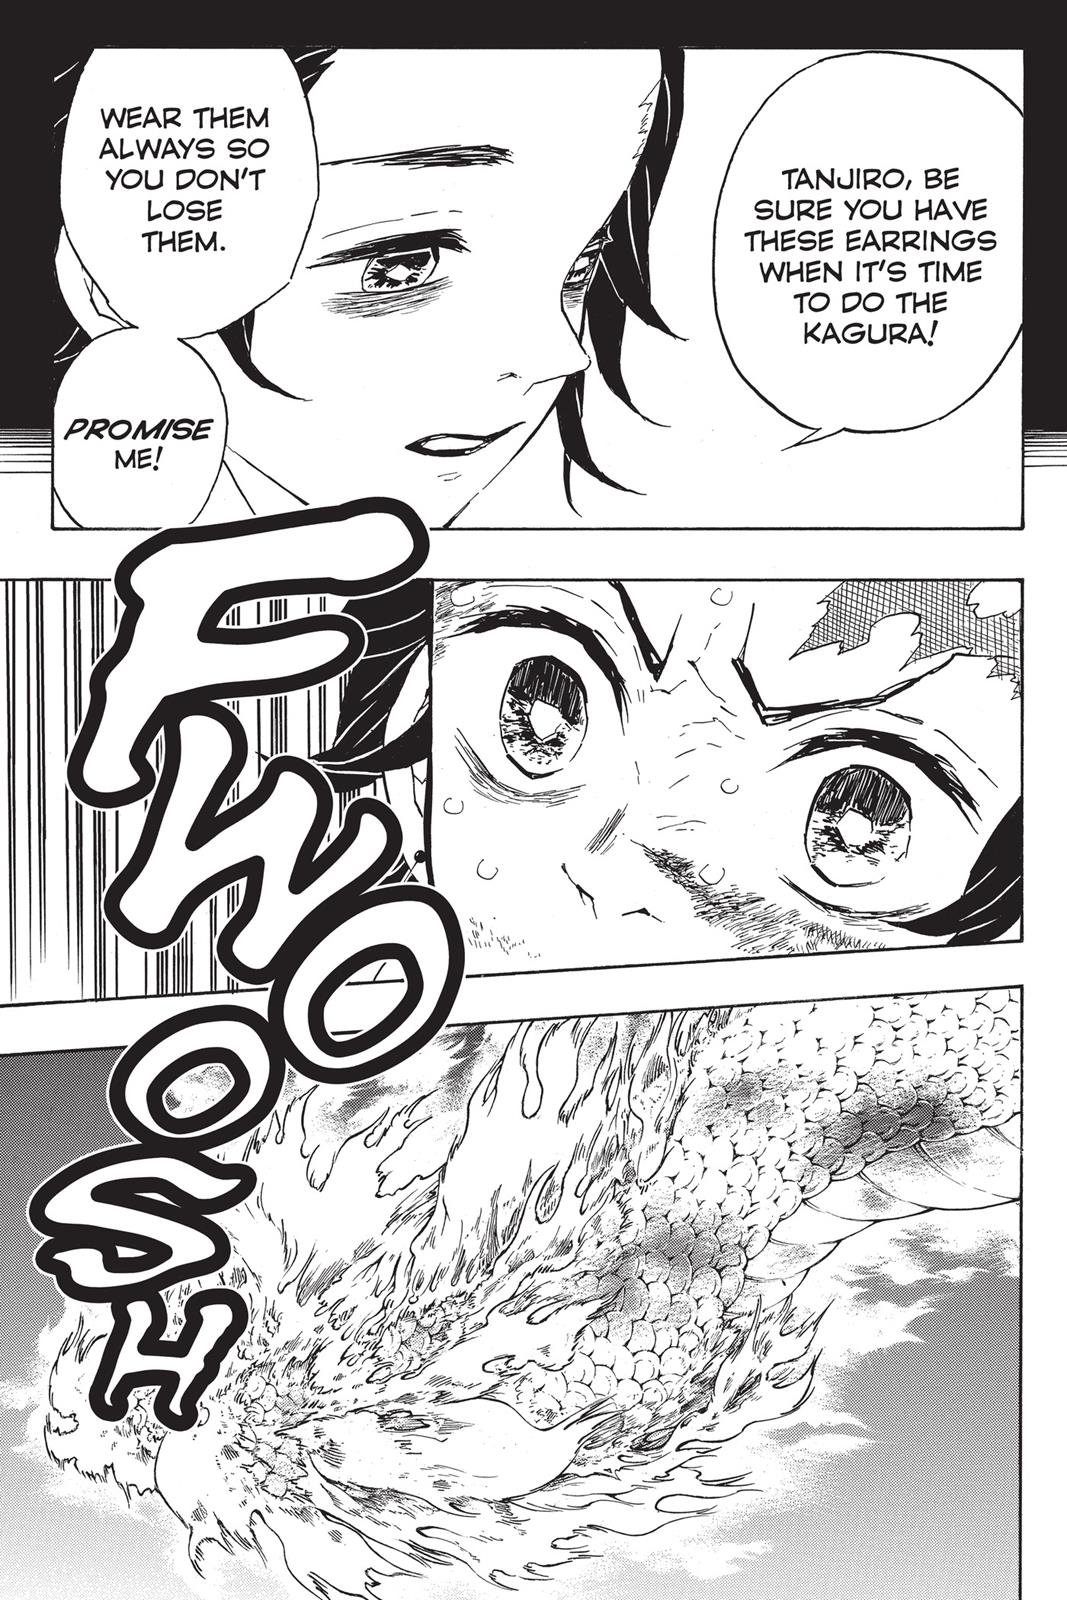 Demon Slayer Manga Manga Chapter - 40 - image 5